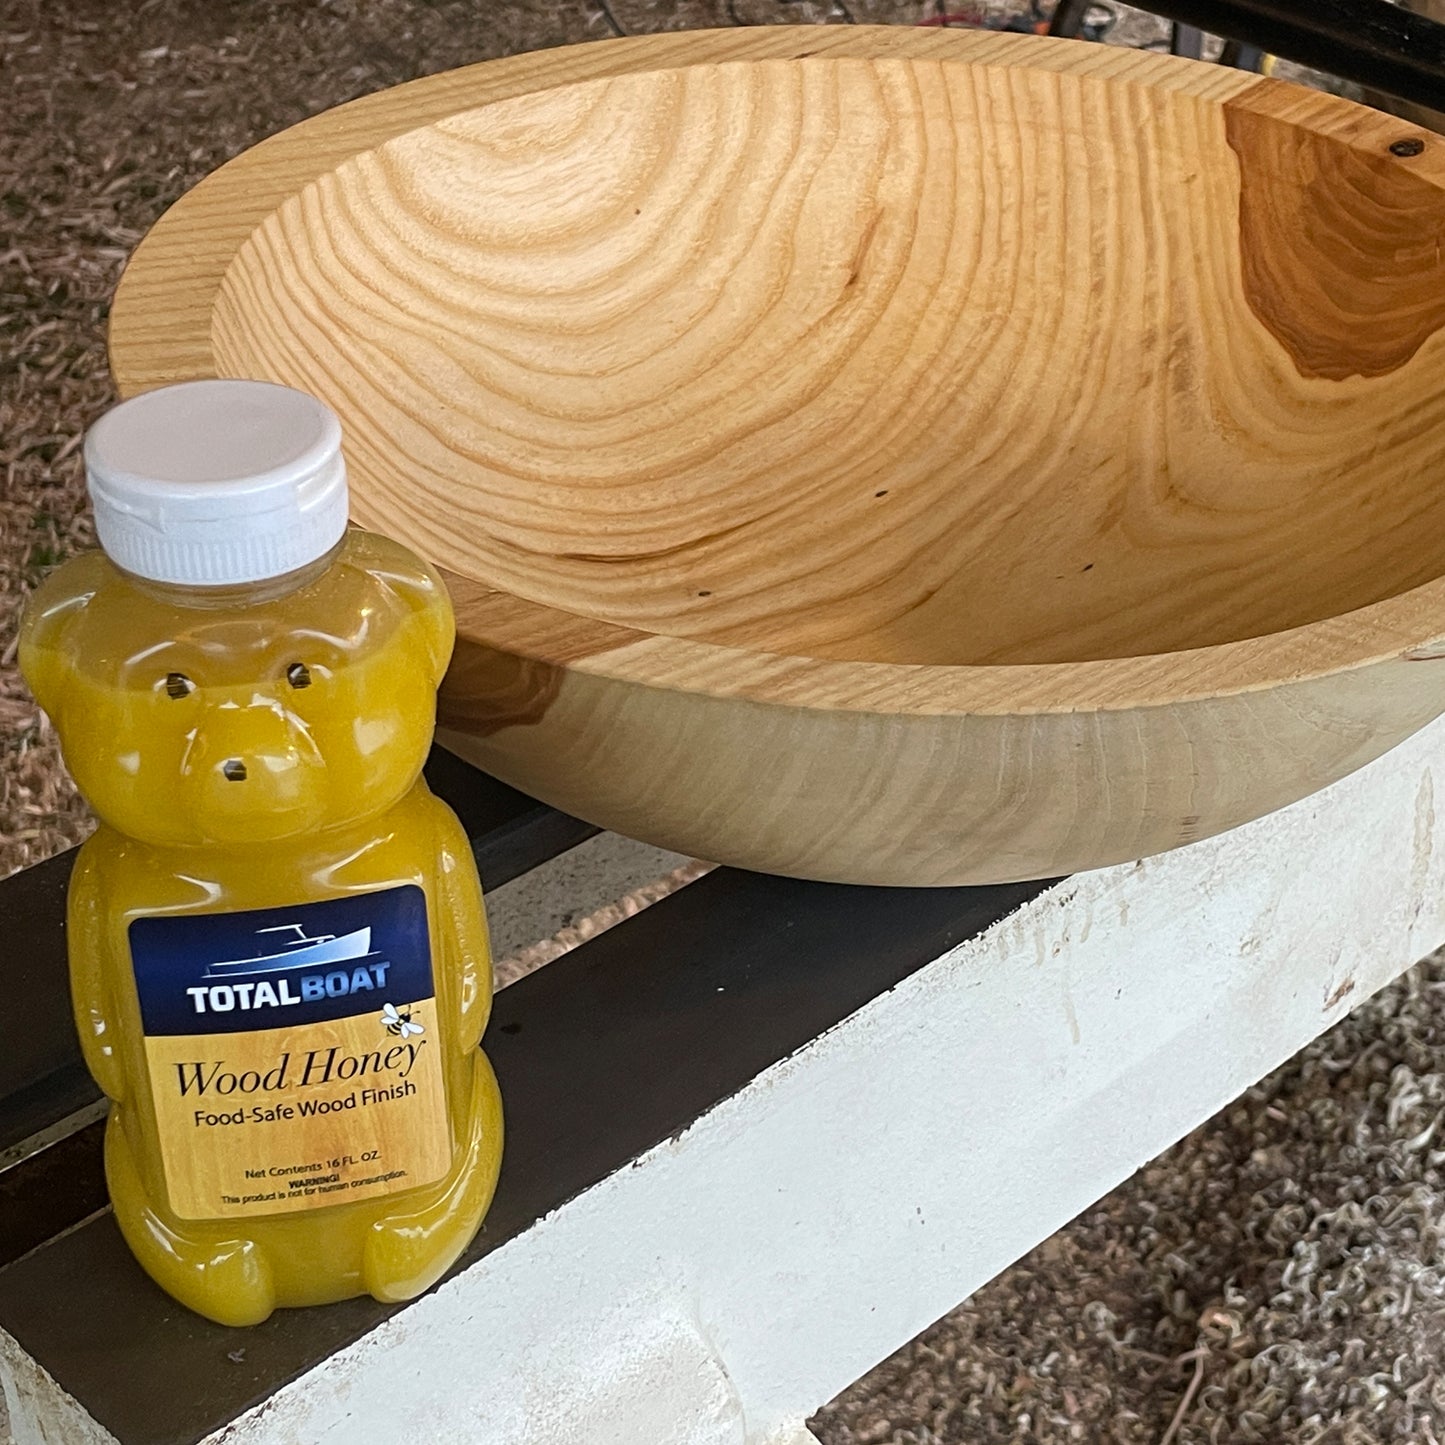 TotalBoat Wood Honey Food Safe Wood Finish used on a bowl